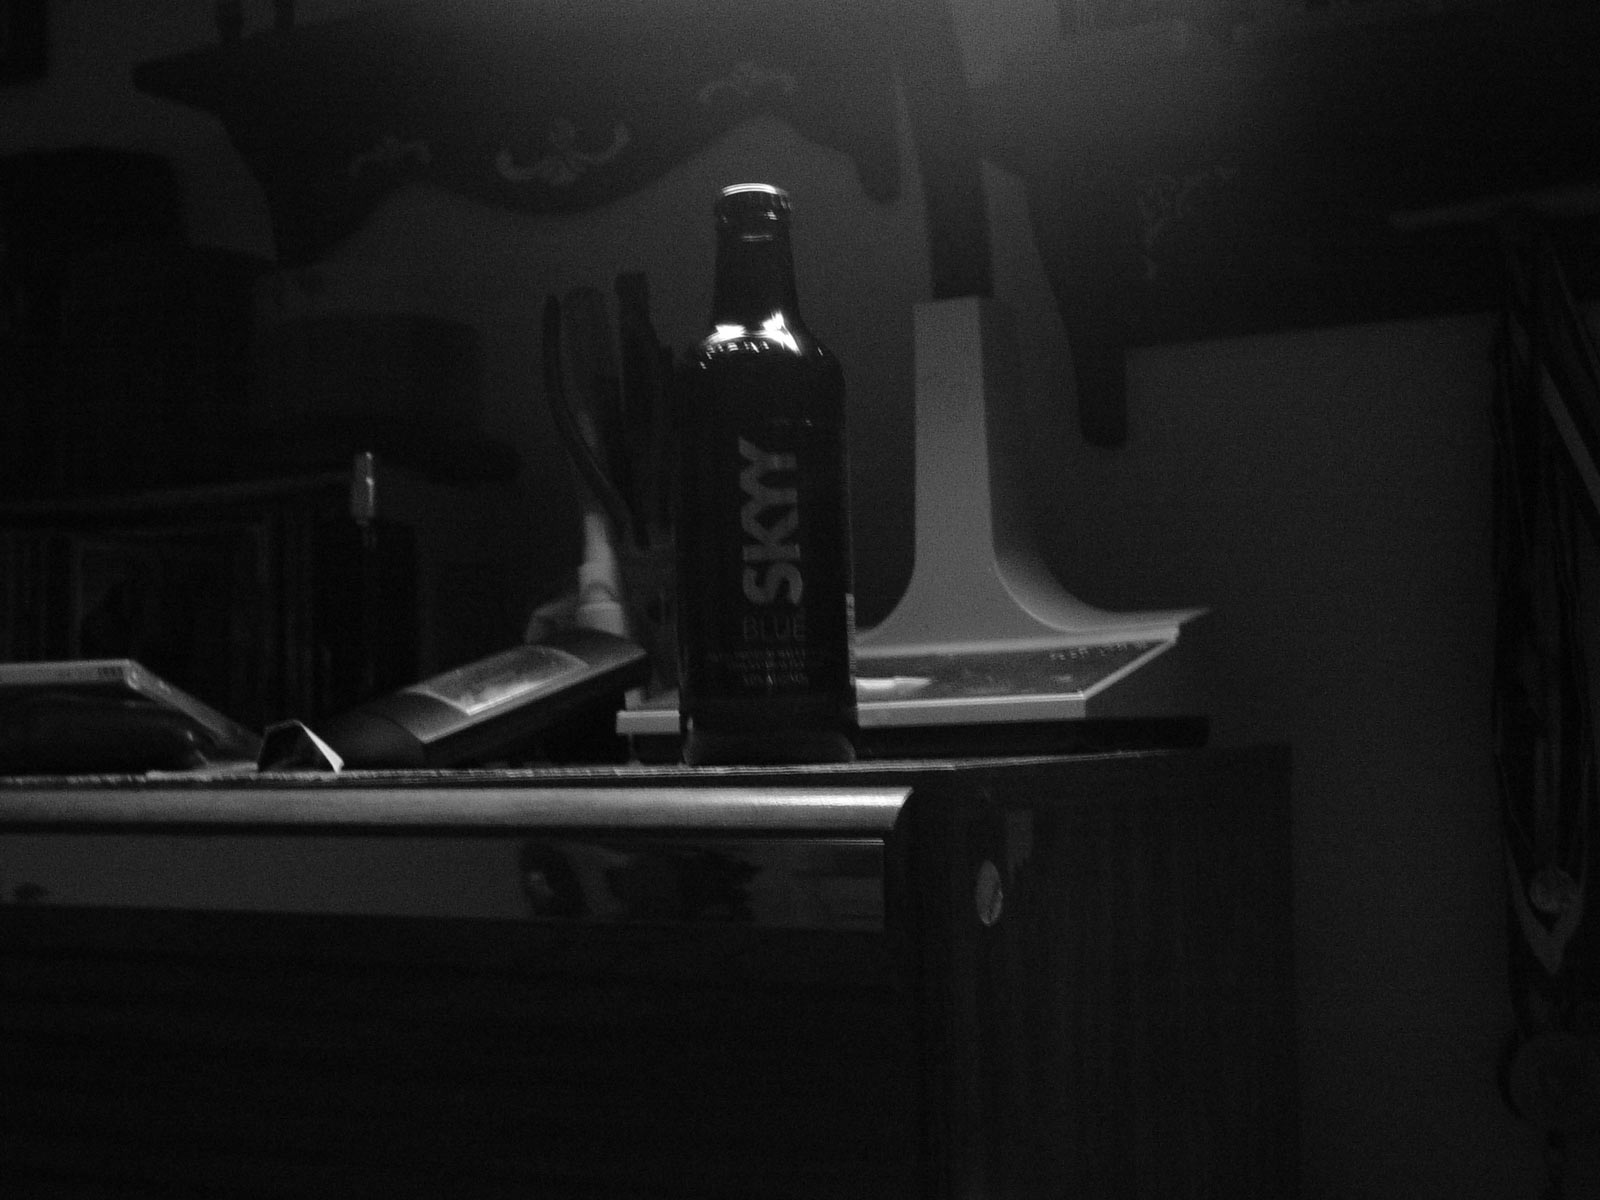 Bottle on table, Blackandwhite, Bottle, Dark, Table, HQ Photo